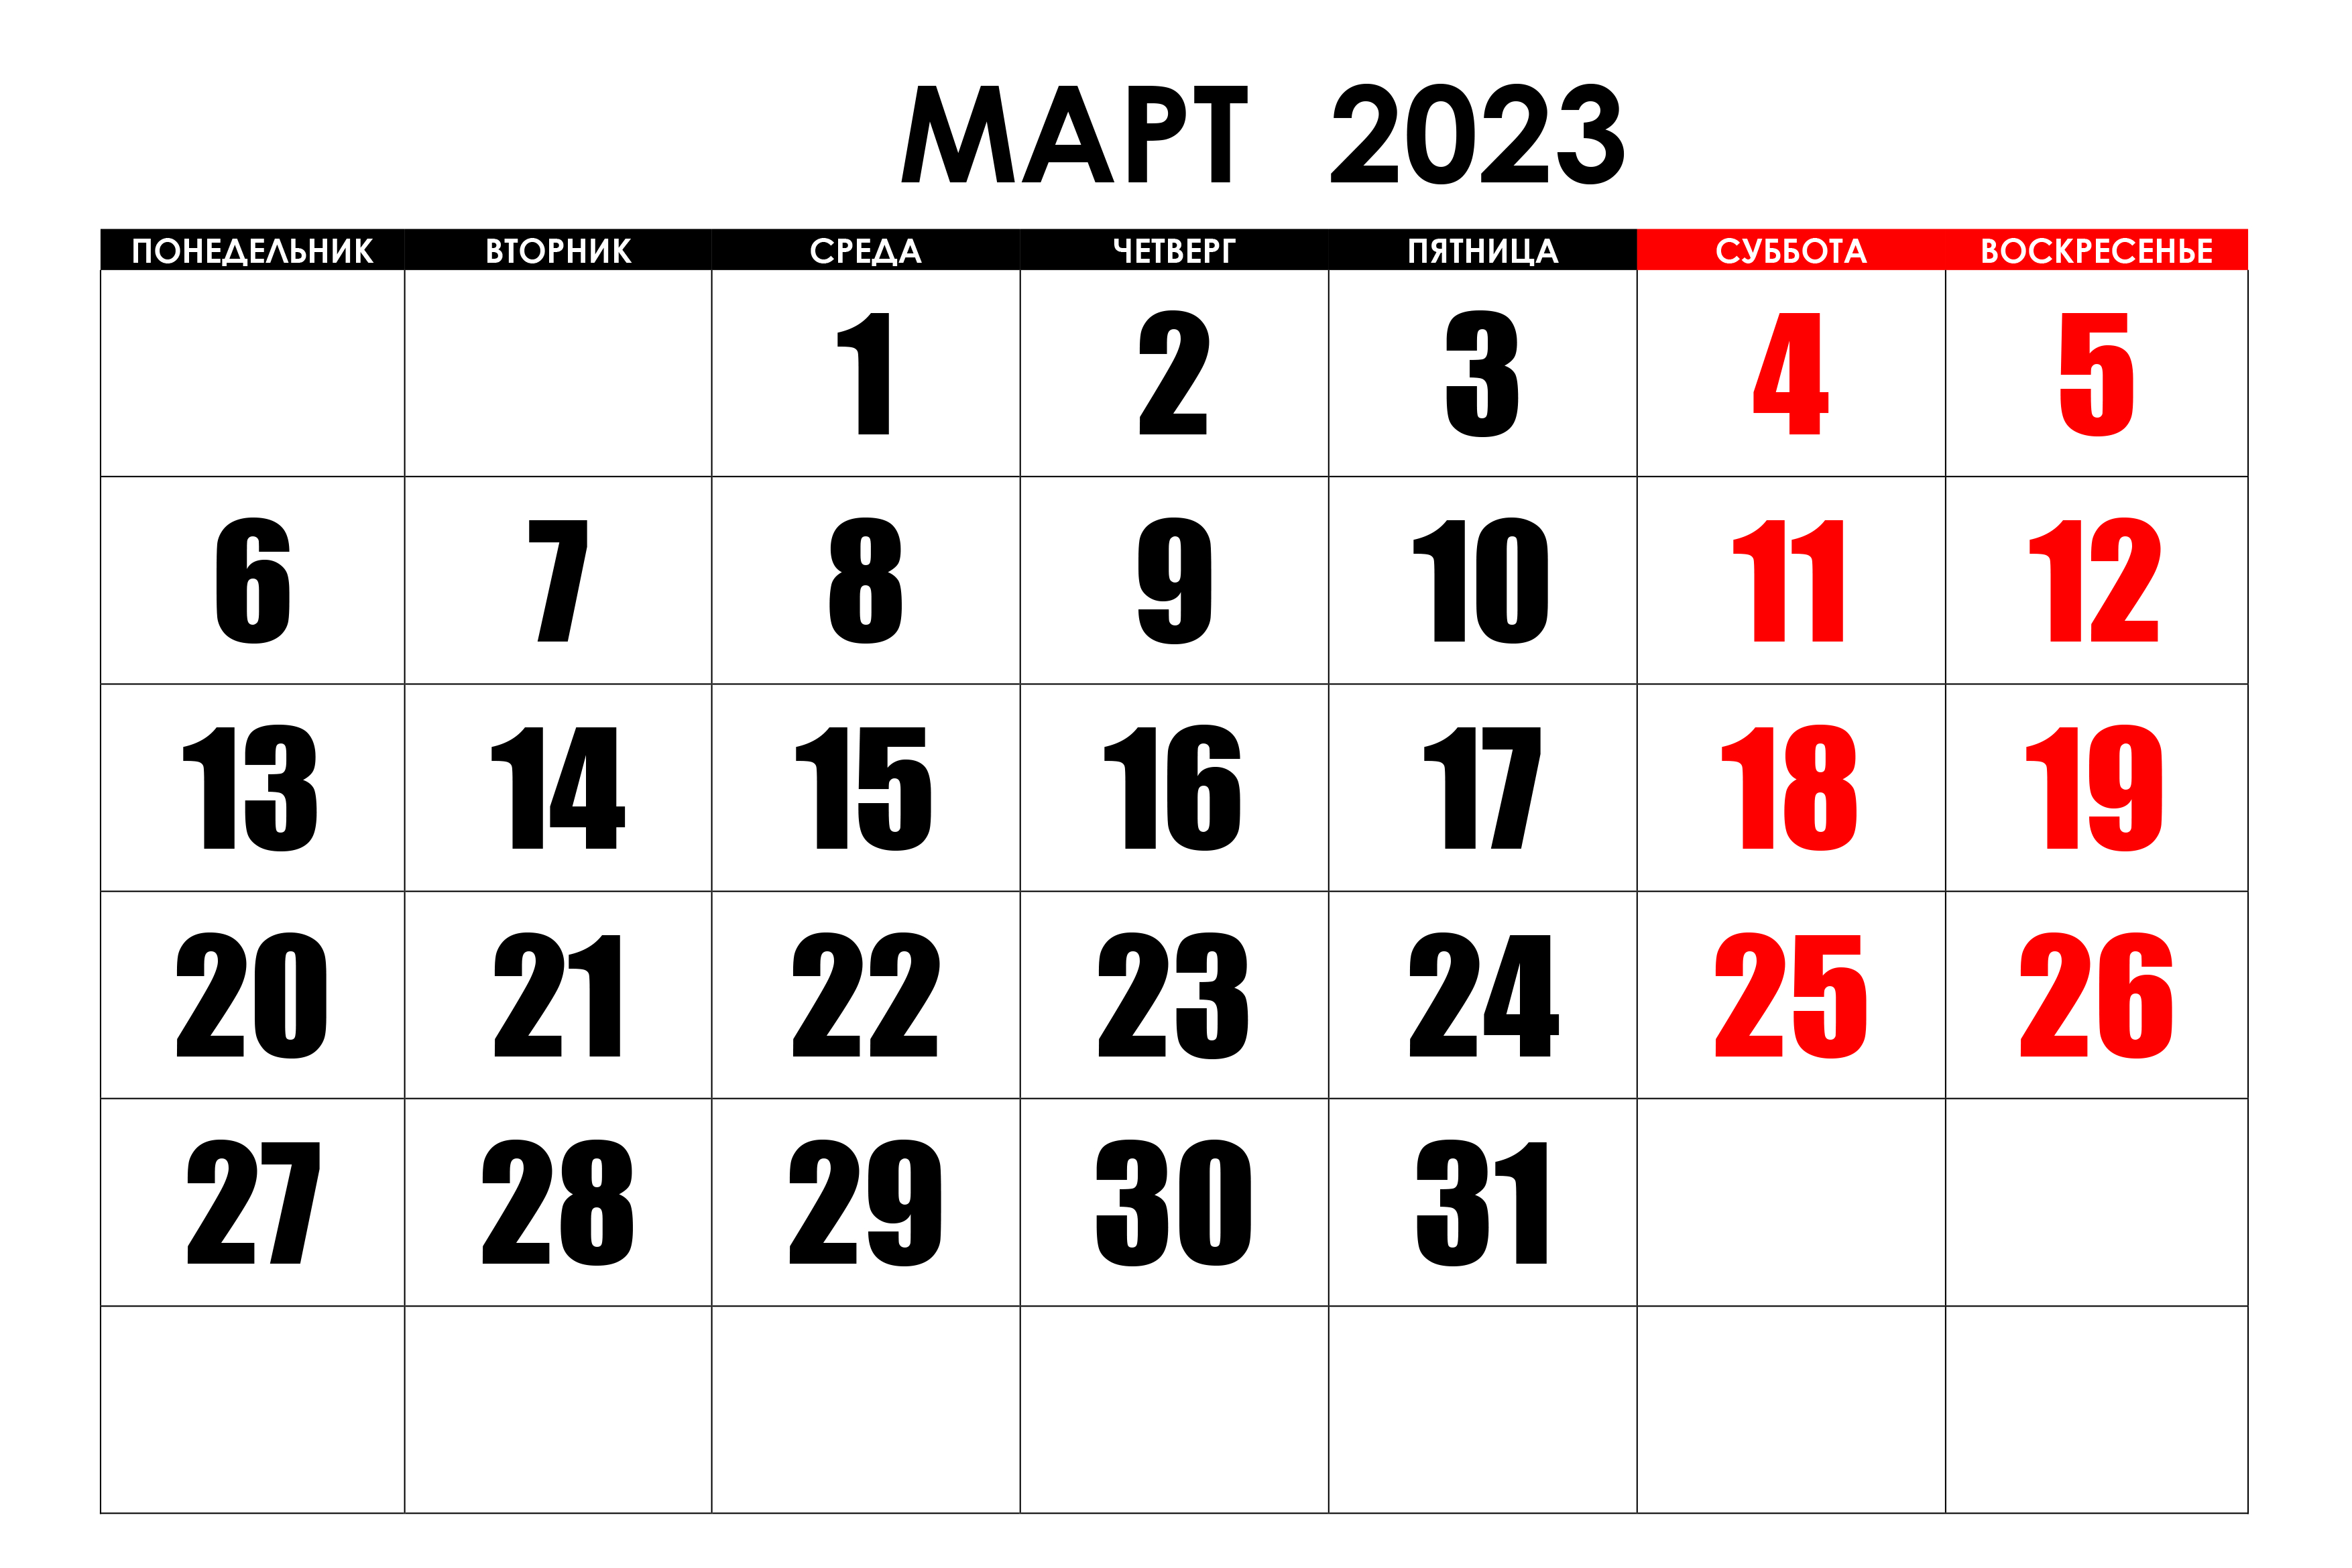 Изменения в законодательстве, которые вступают в силу в марте 2023 года